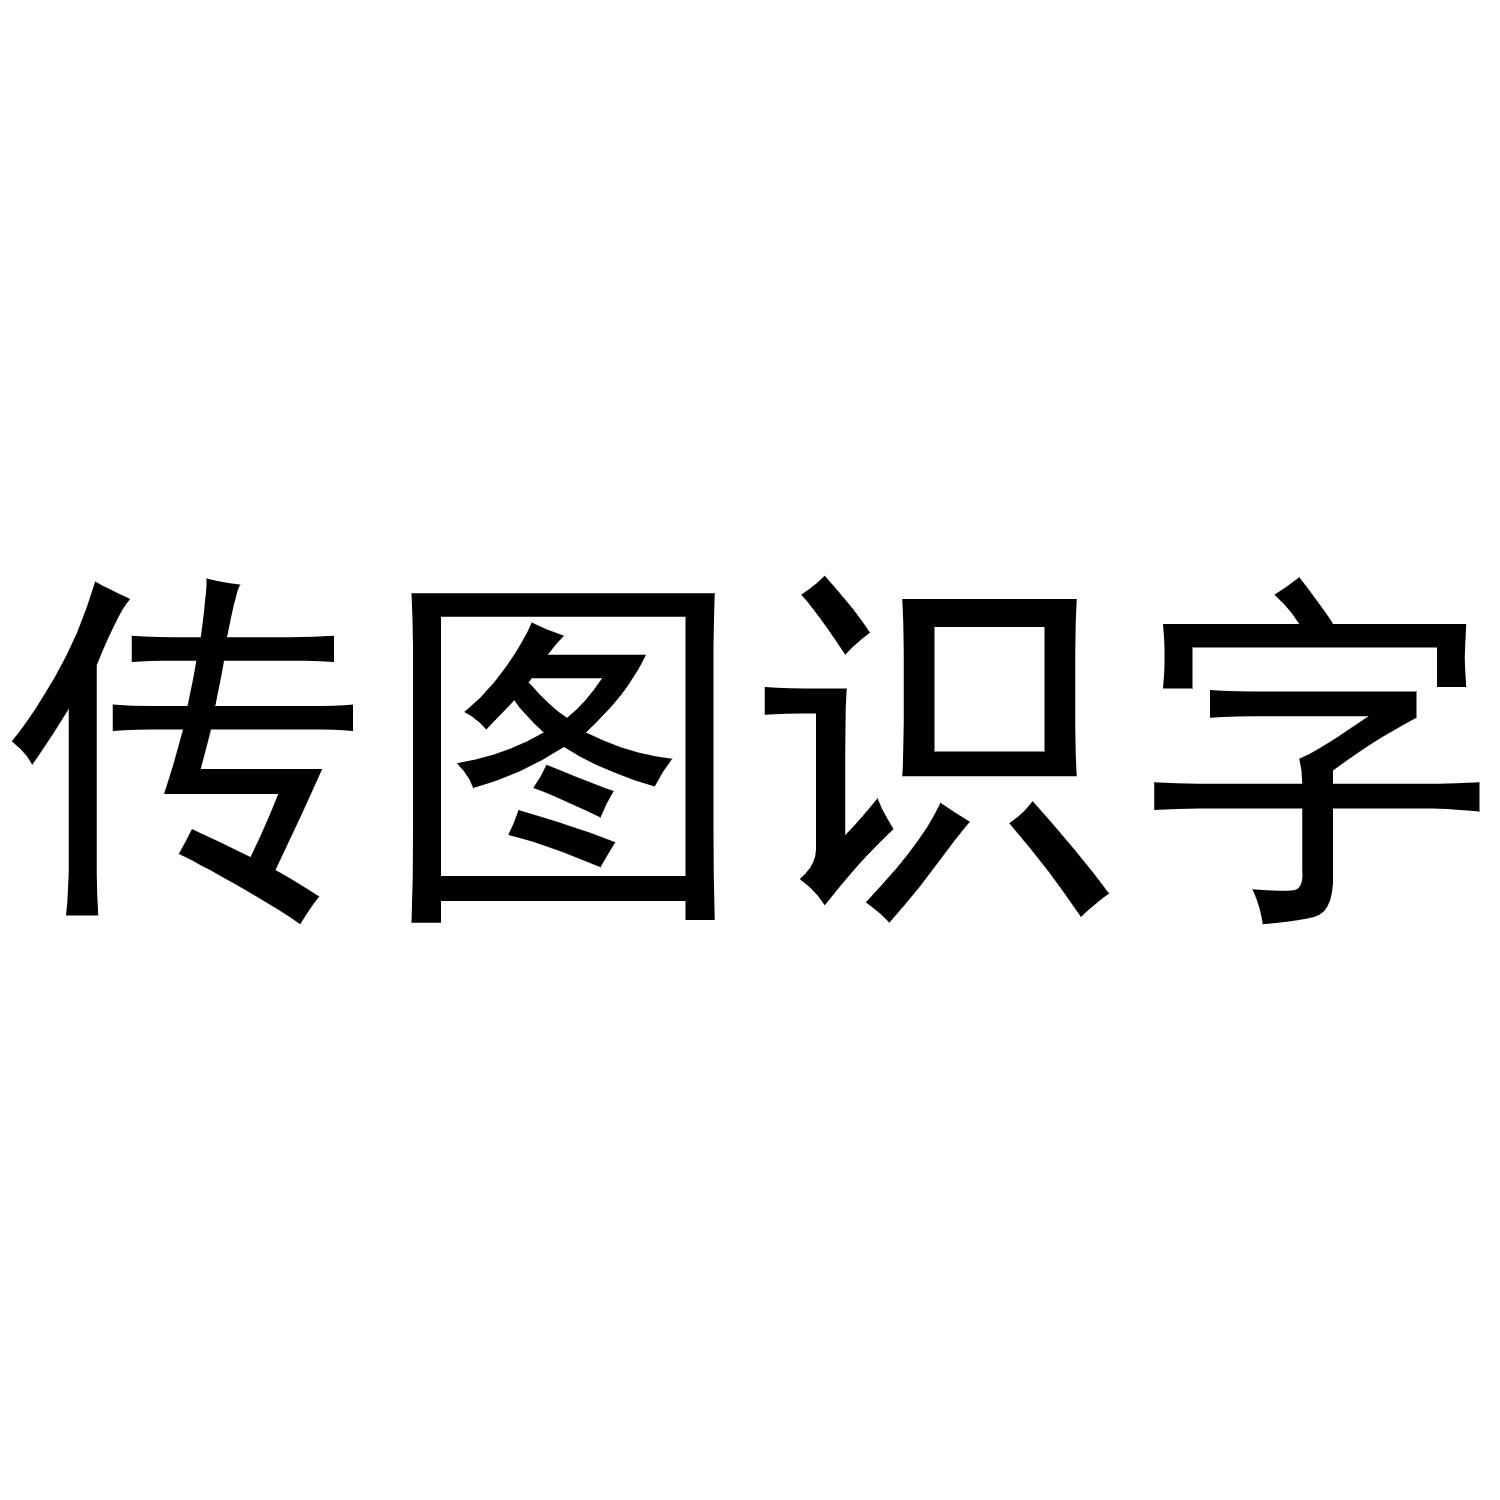 商标文字传图识字商标注册号 49347040,商标申请人新予科技(广州)有限